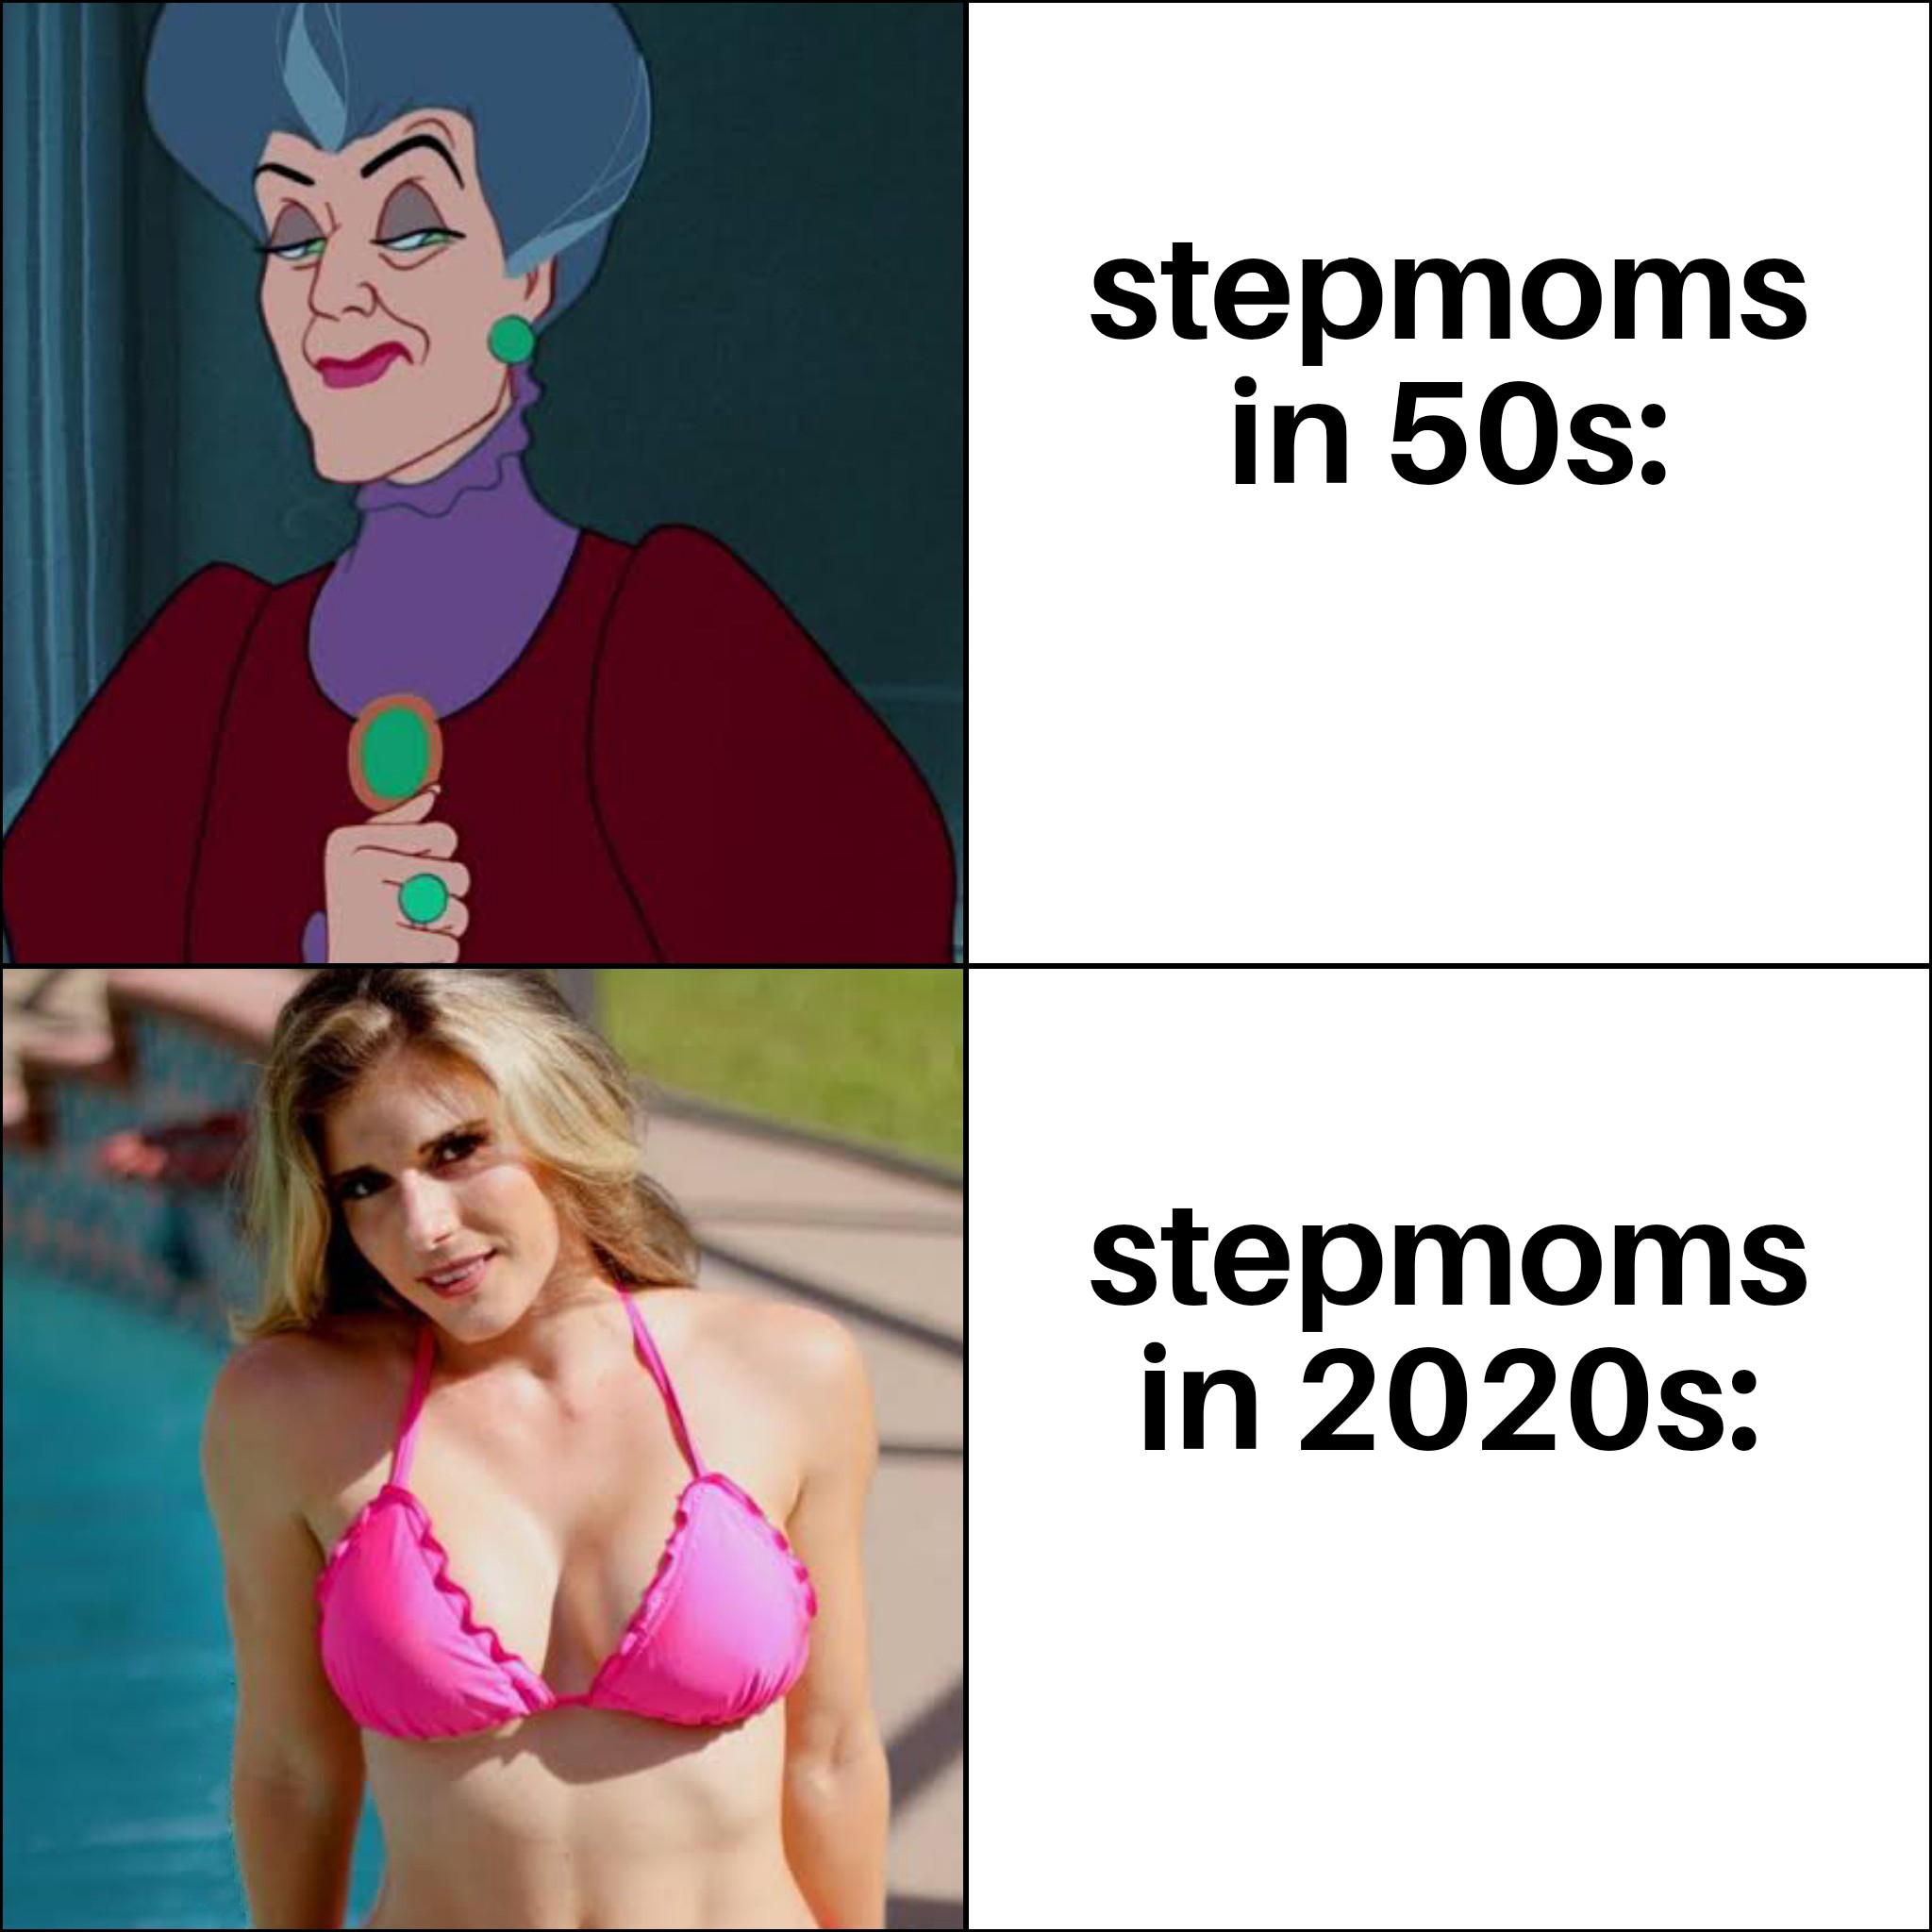 funny memes - dank memes - shoulder - stepmoms in 50s stepmoms in 2020s